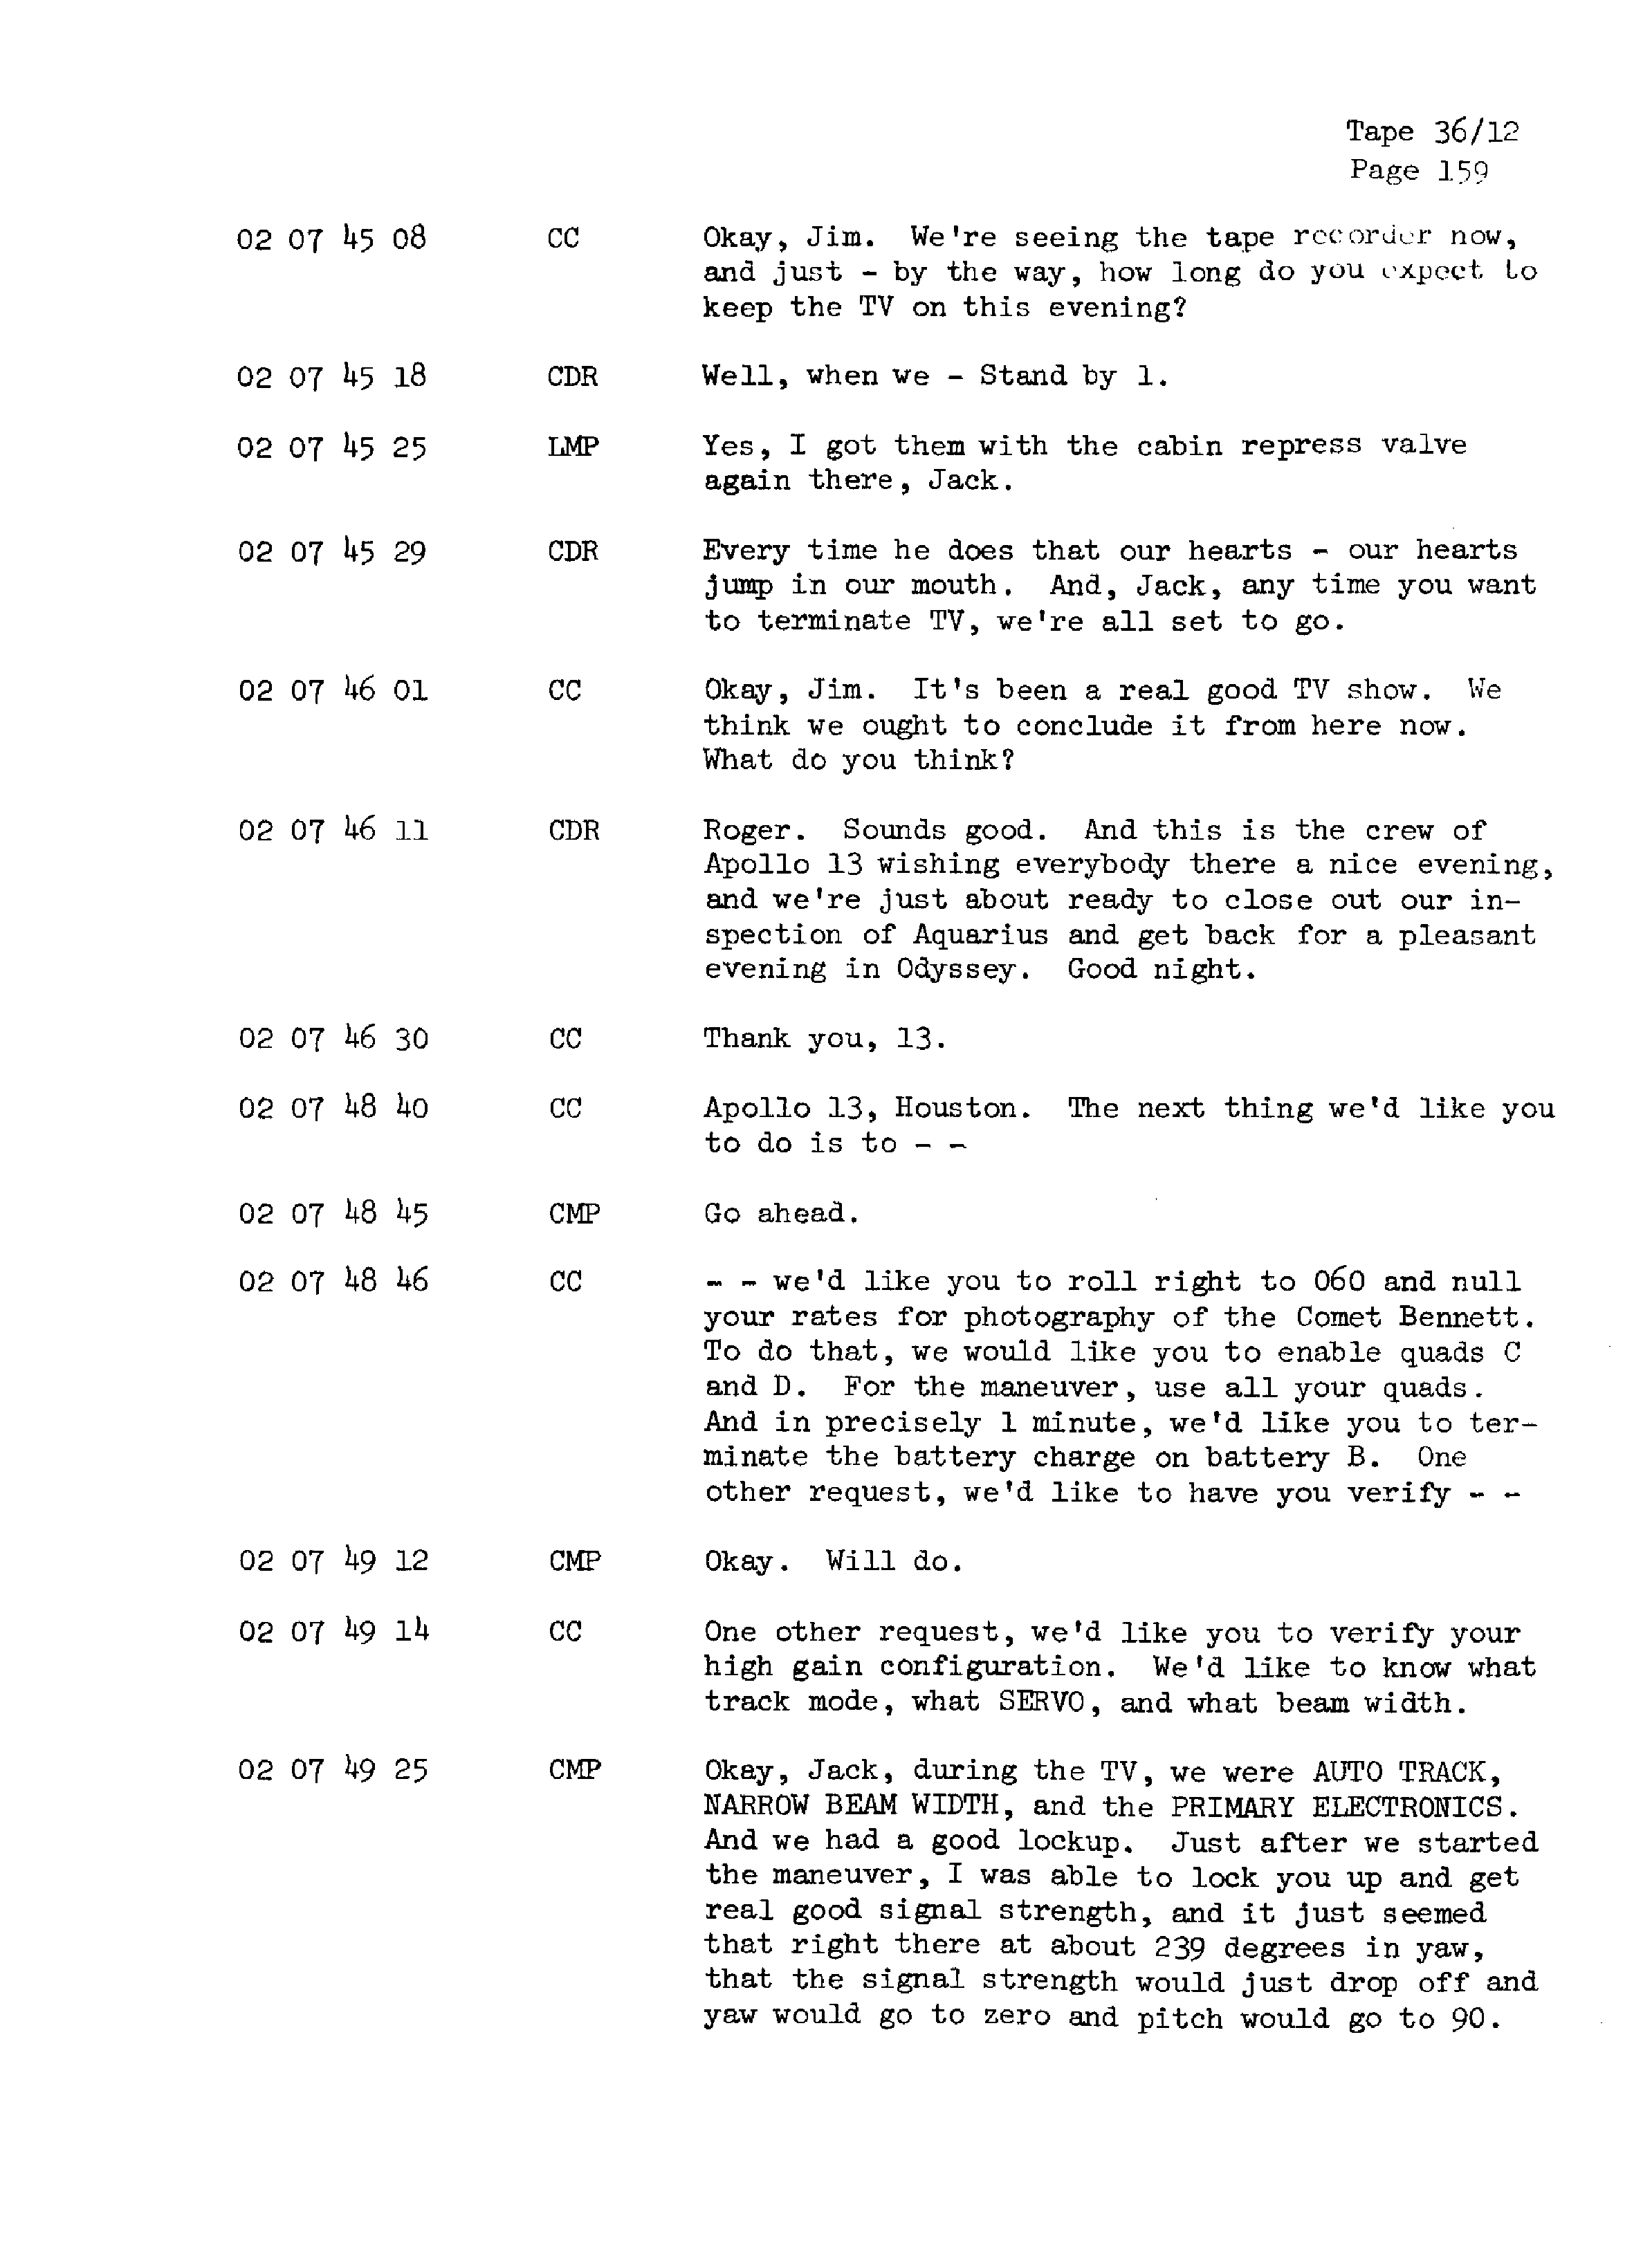 Page 166 of Apollo 13’s original transcript